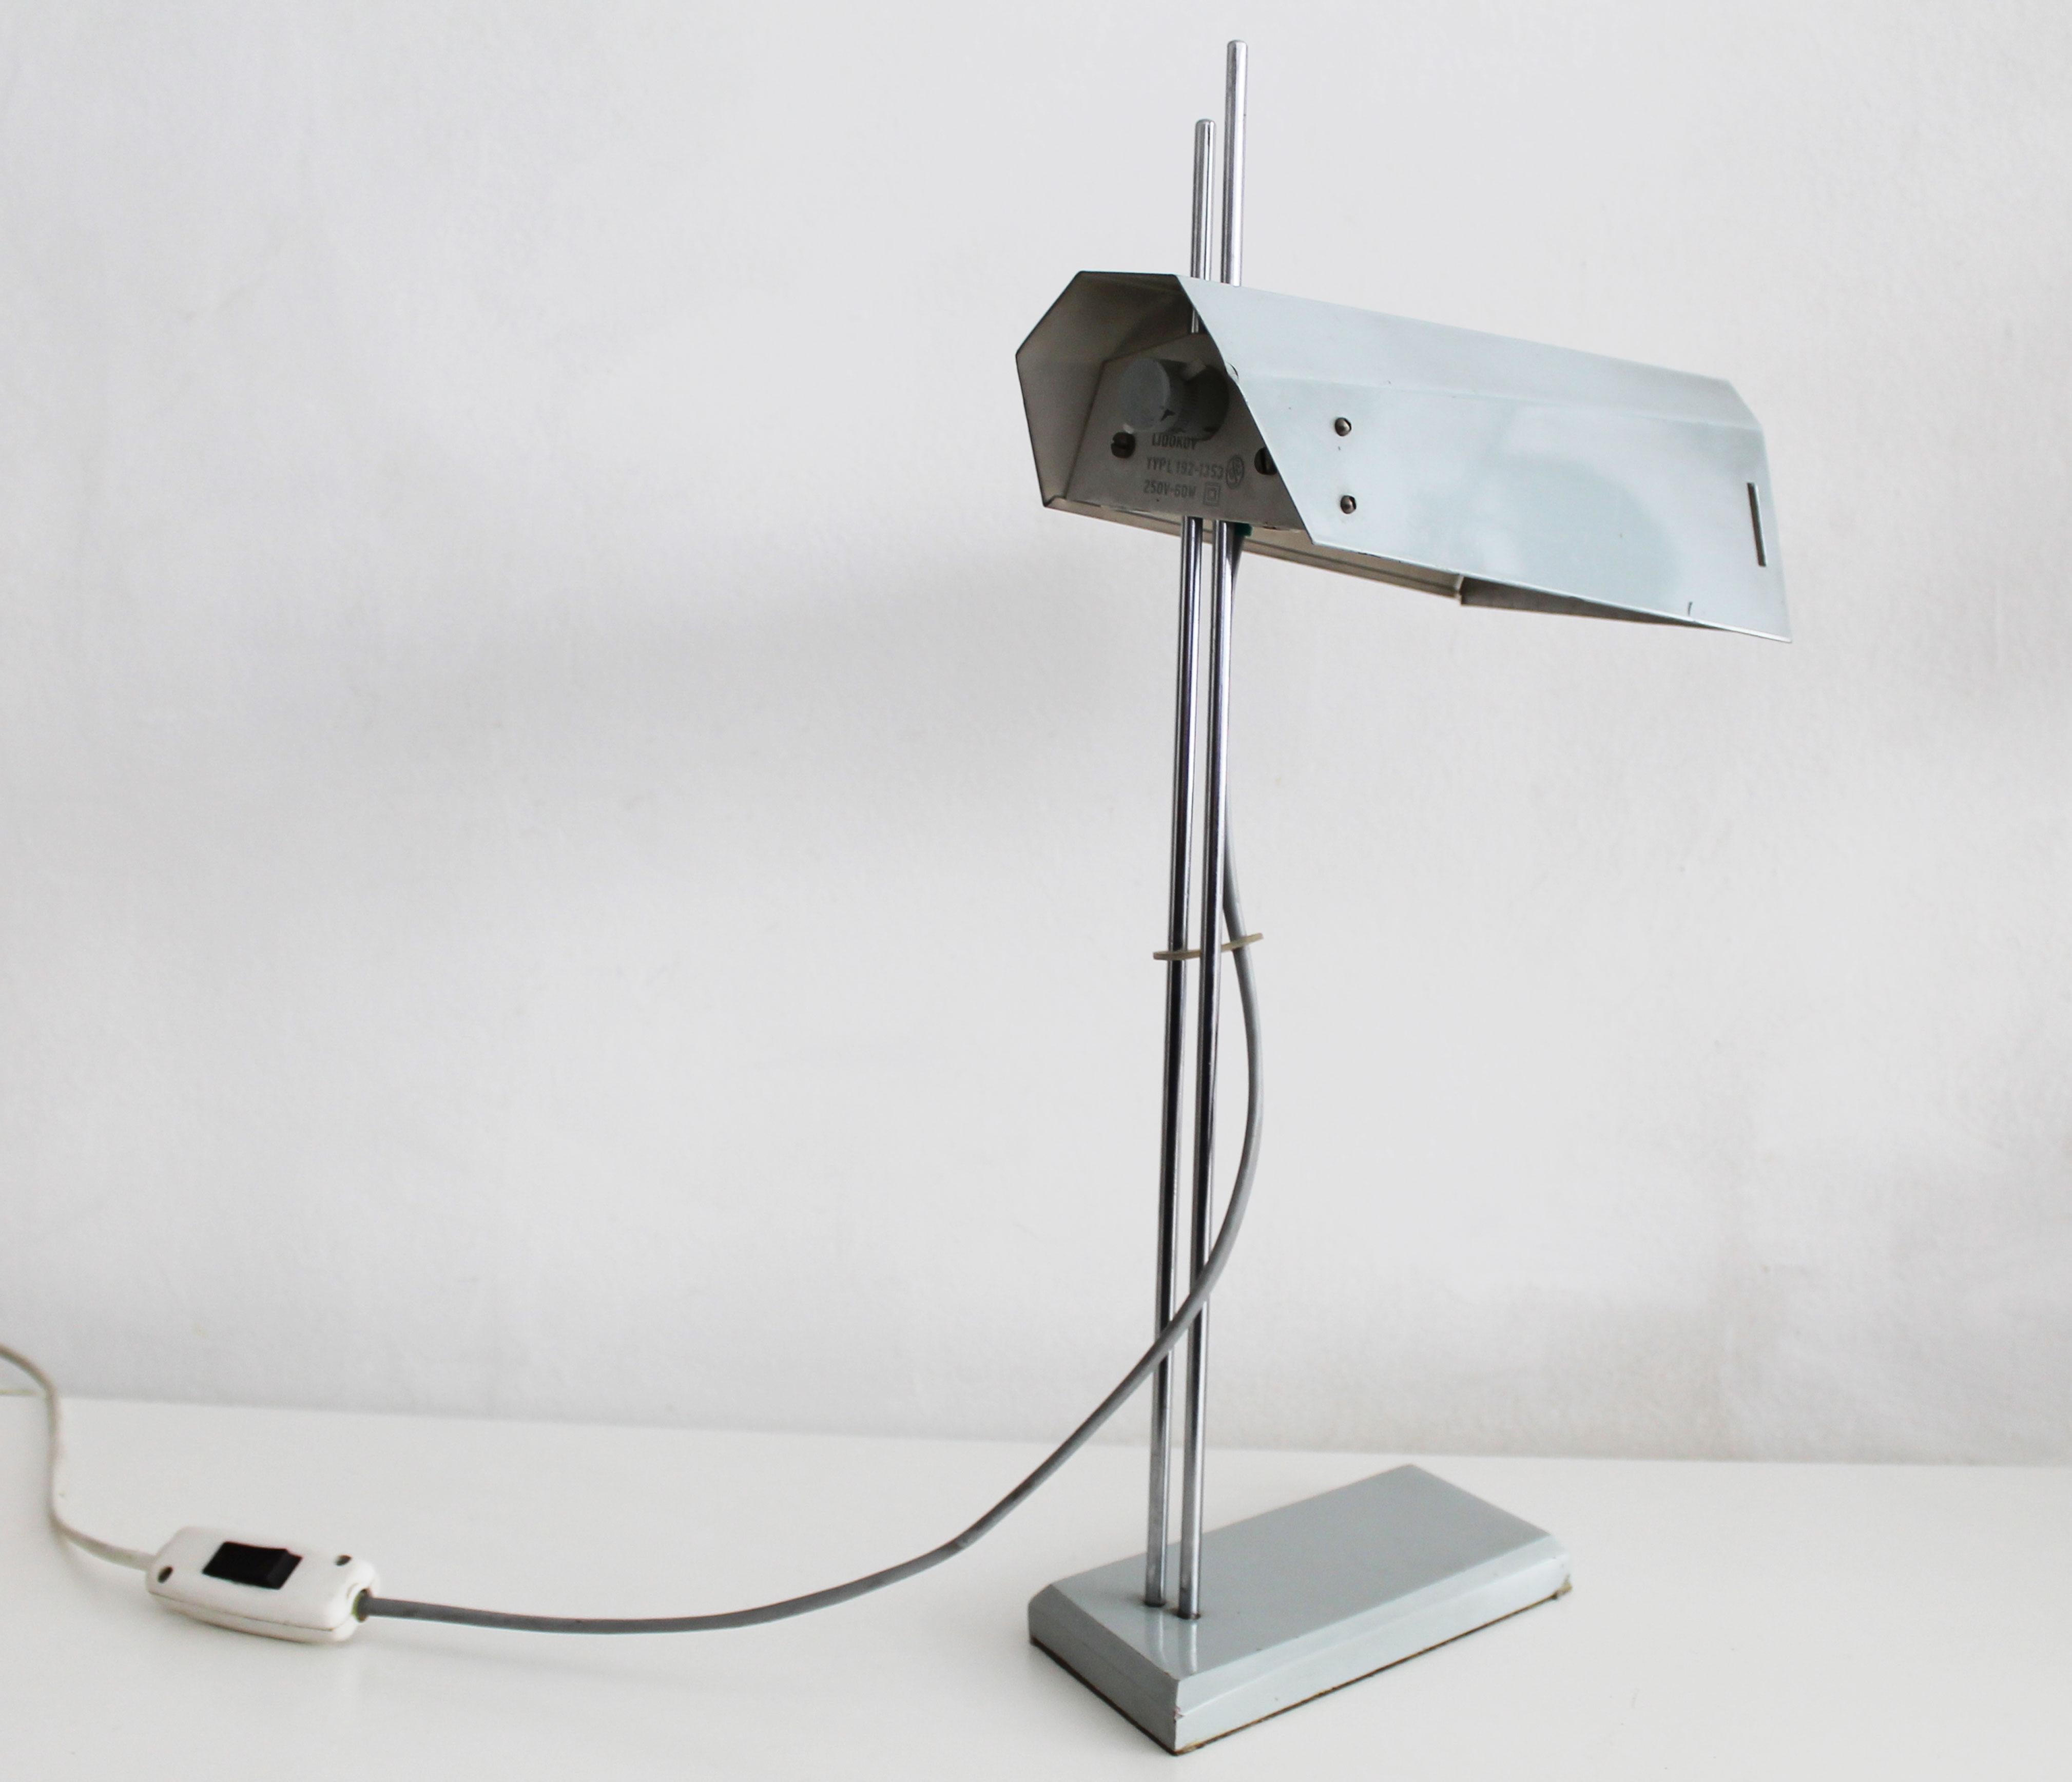 Cette lampe de bureau a été conçue à la fin des années 1970 et produite par Lidokov dans l'ancienne Tchécoslovaquie.

L'abat-jour est maintenu par deux tiges en acier. Cela permet à l'utilisateur d'ajuster l'abat-jour dans différentes positions. Les